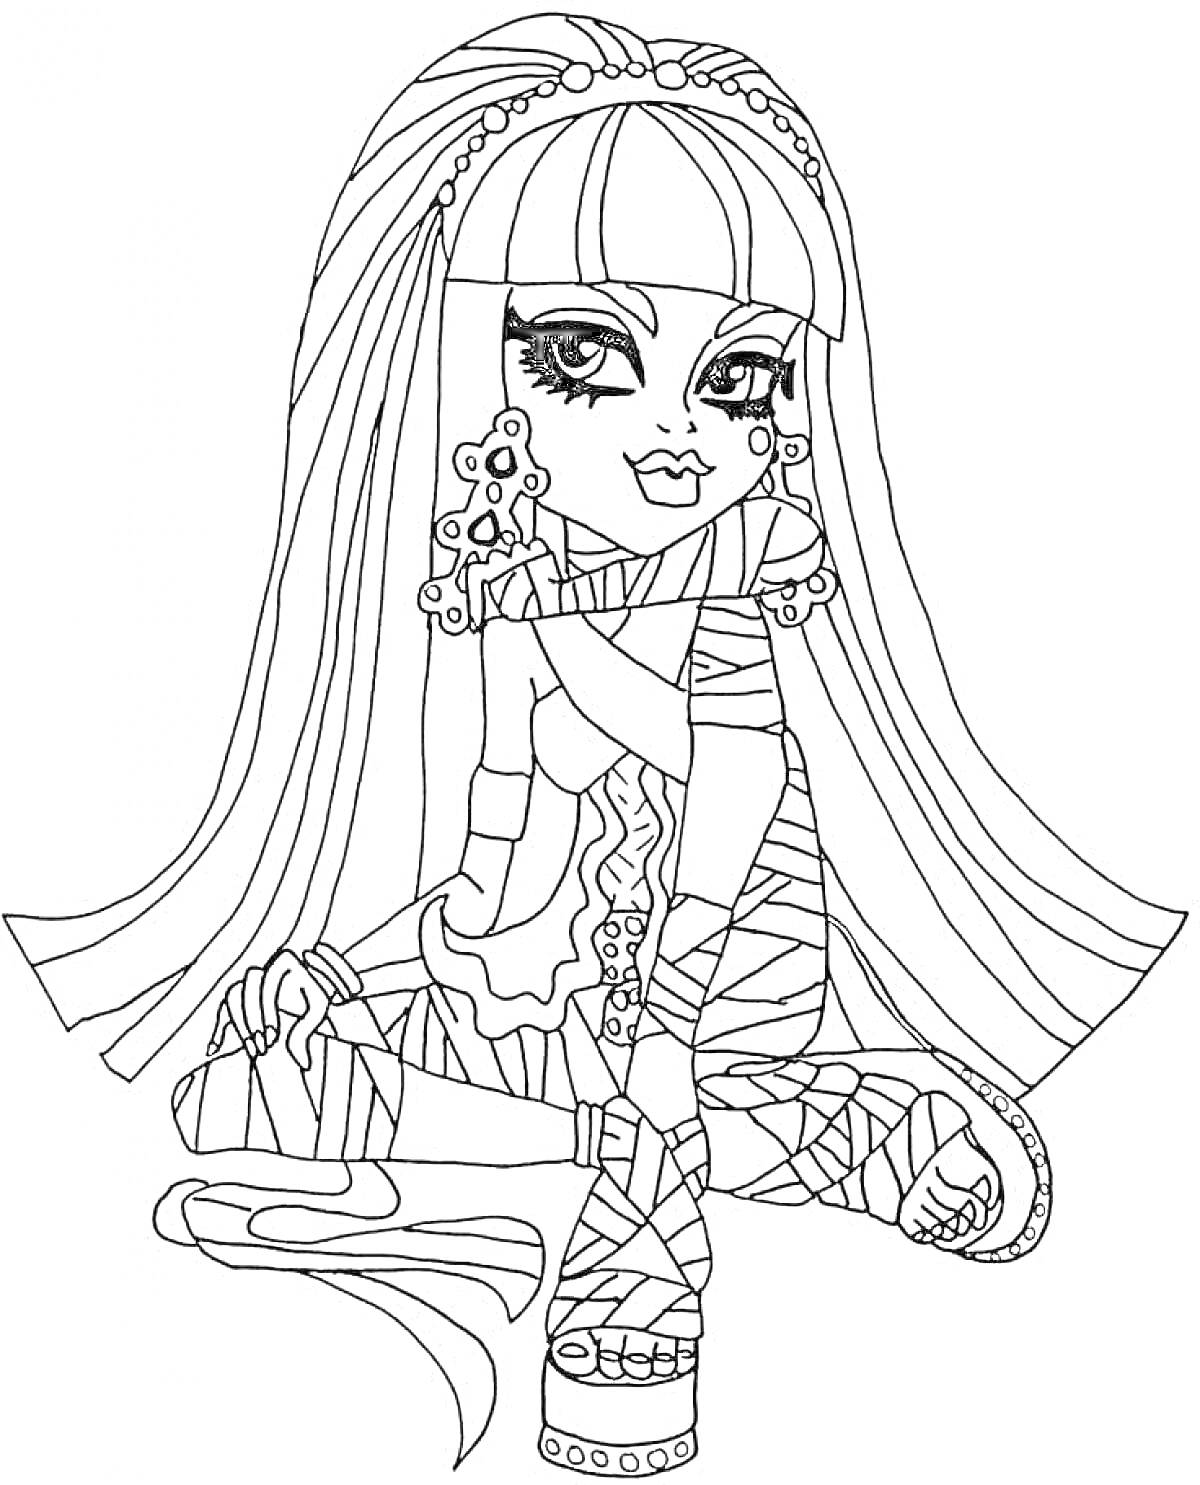 Раскраска Девушка из Монстер Хай с длинными волосами, в обуви на платформе, с серьгами в форме цветков, сидящая на земле с одной согнутой ногой, обмотанная лентами.